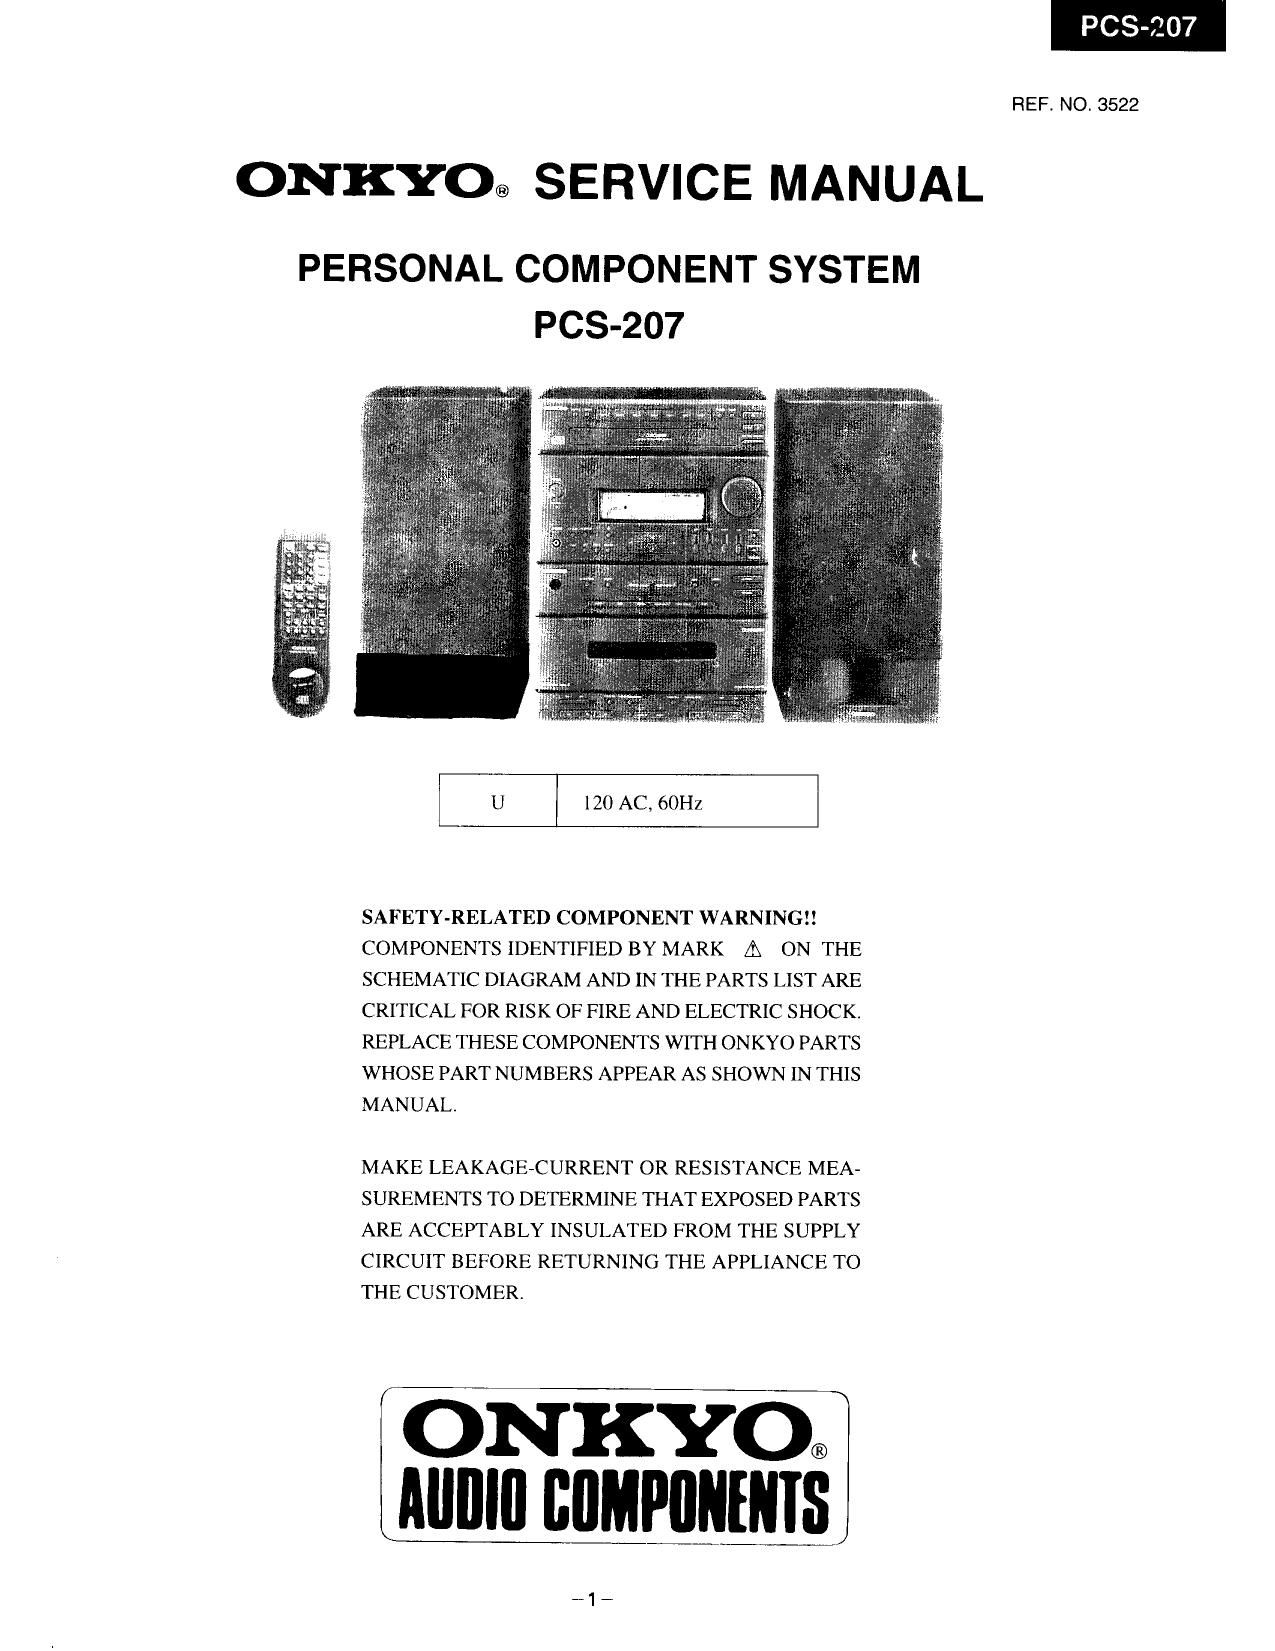 Onkyo PCS 207 Service Manual